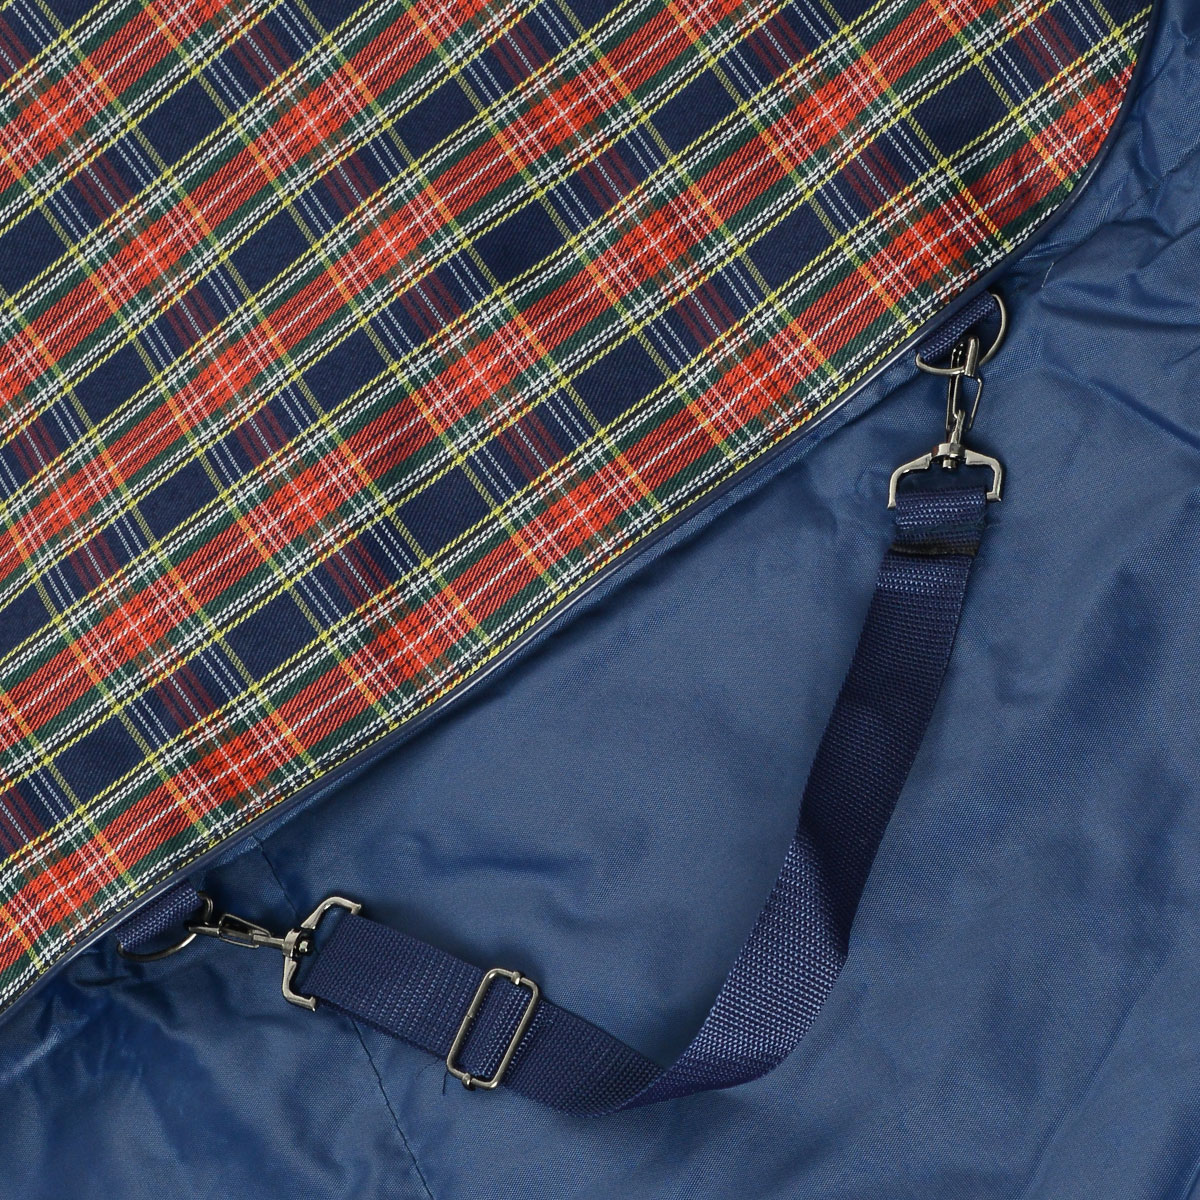 фото Автогамак для собак "Titbit", цвет: синий, 142 см х 140 см